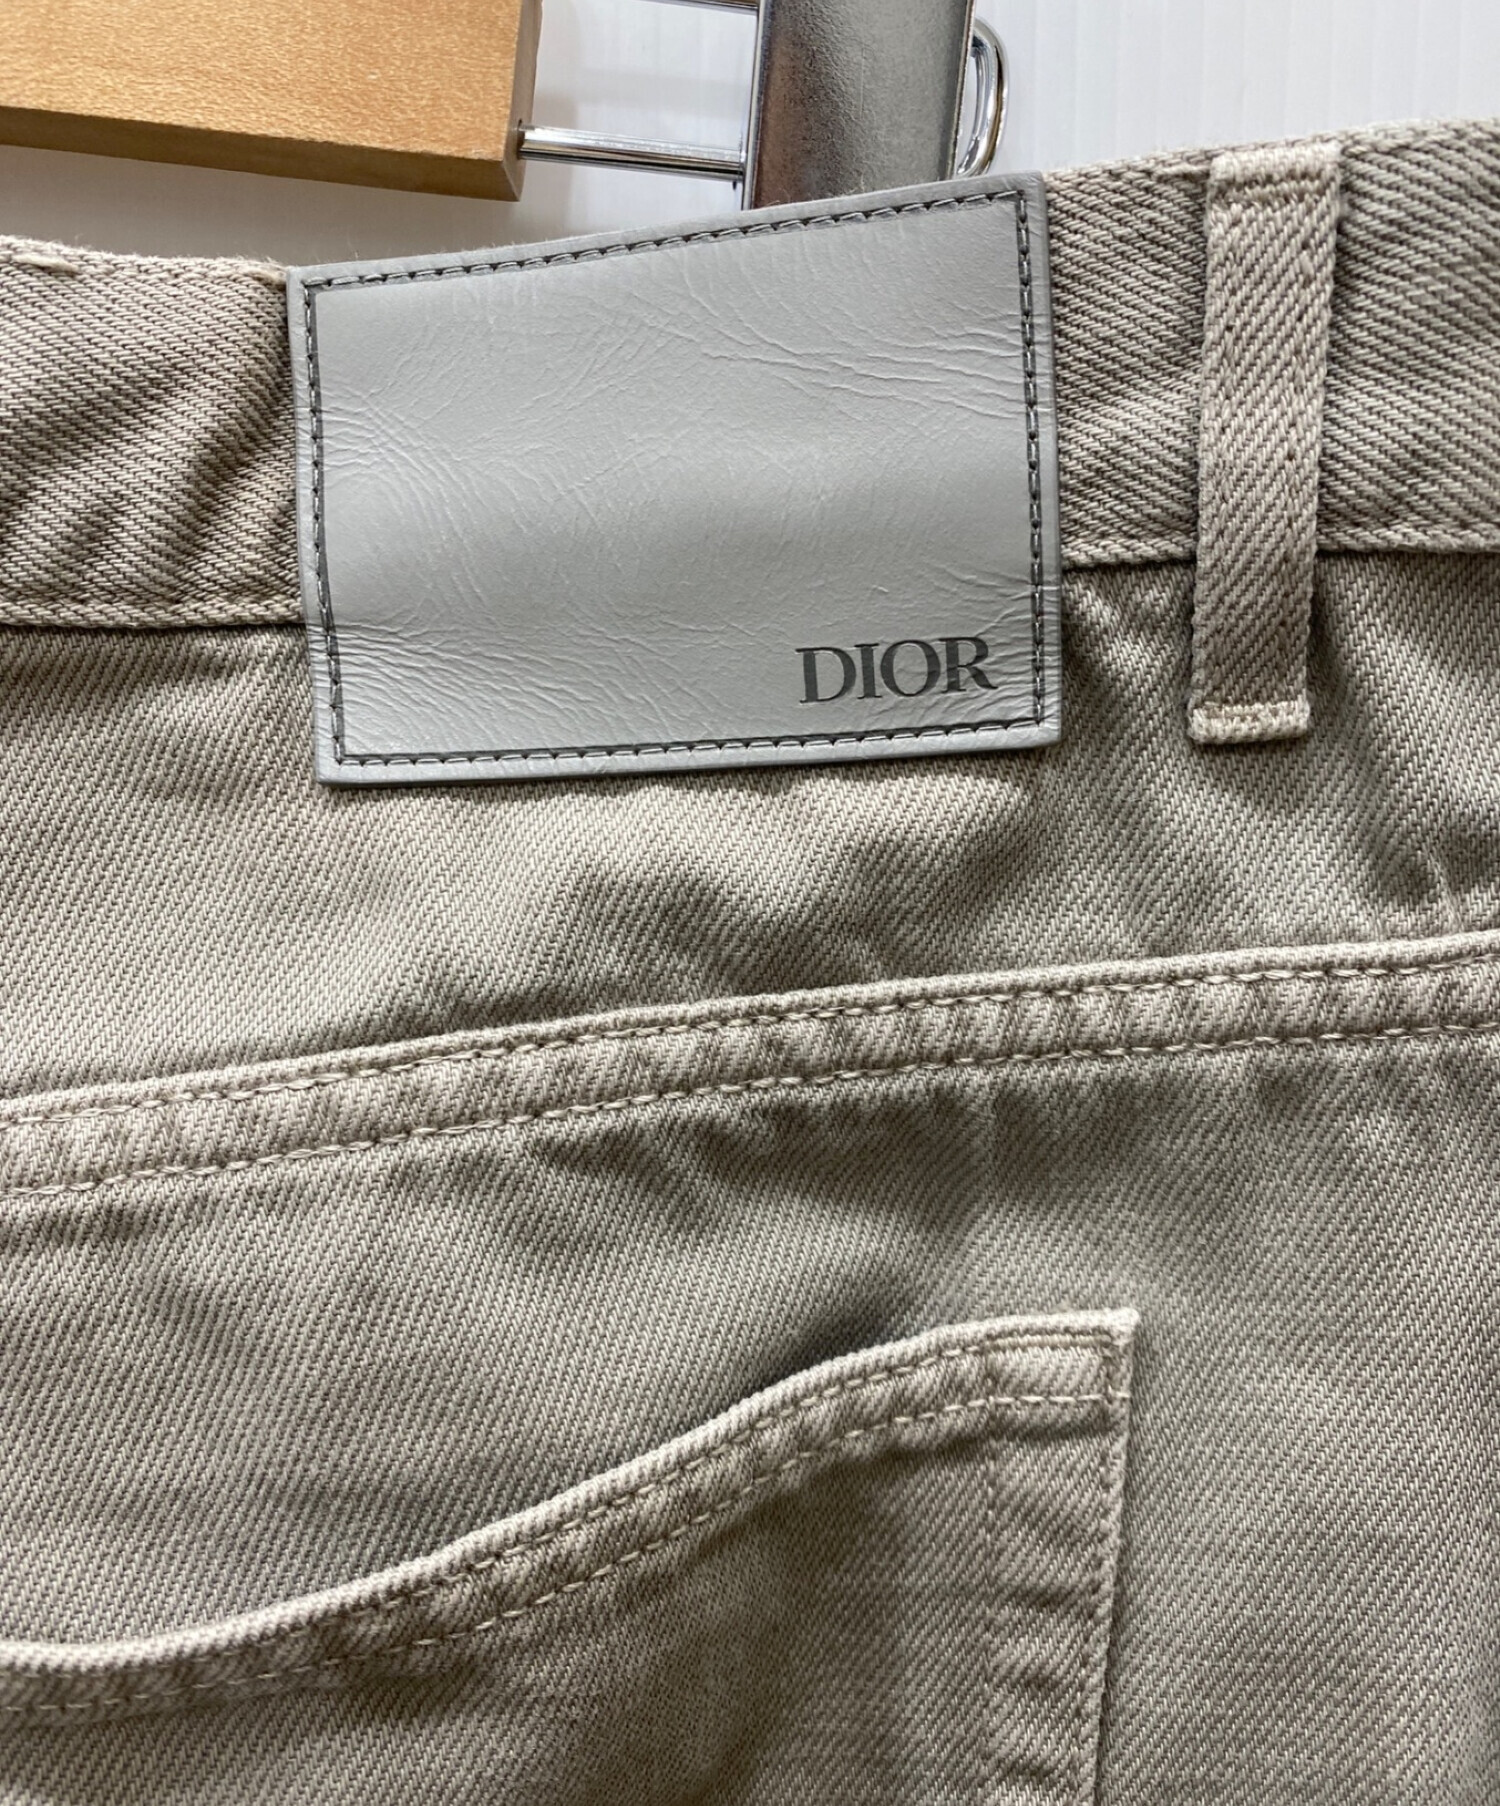 中古・古着通販】Christian Dior (クリスチャン ディオール) JUDY